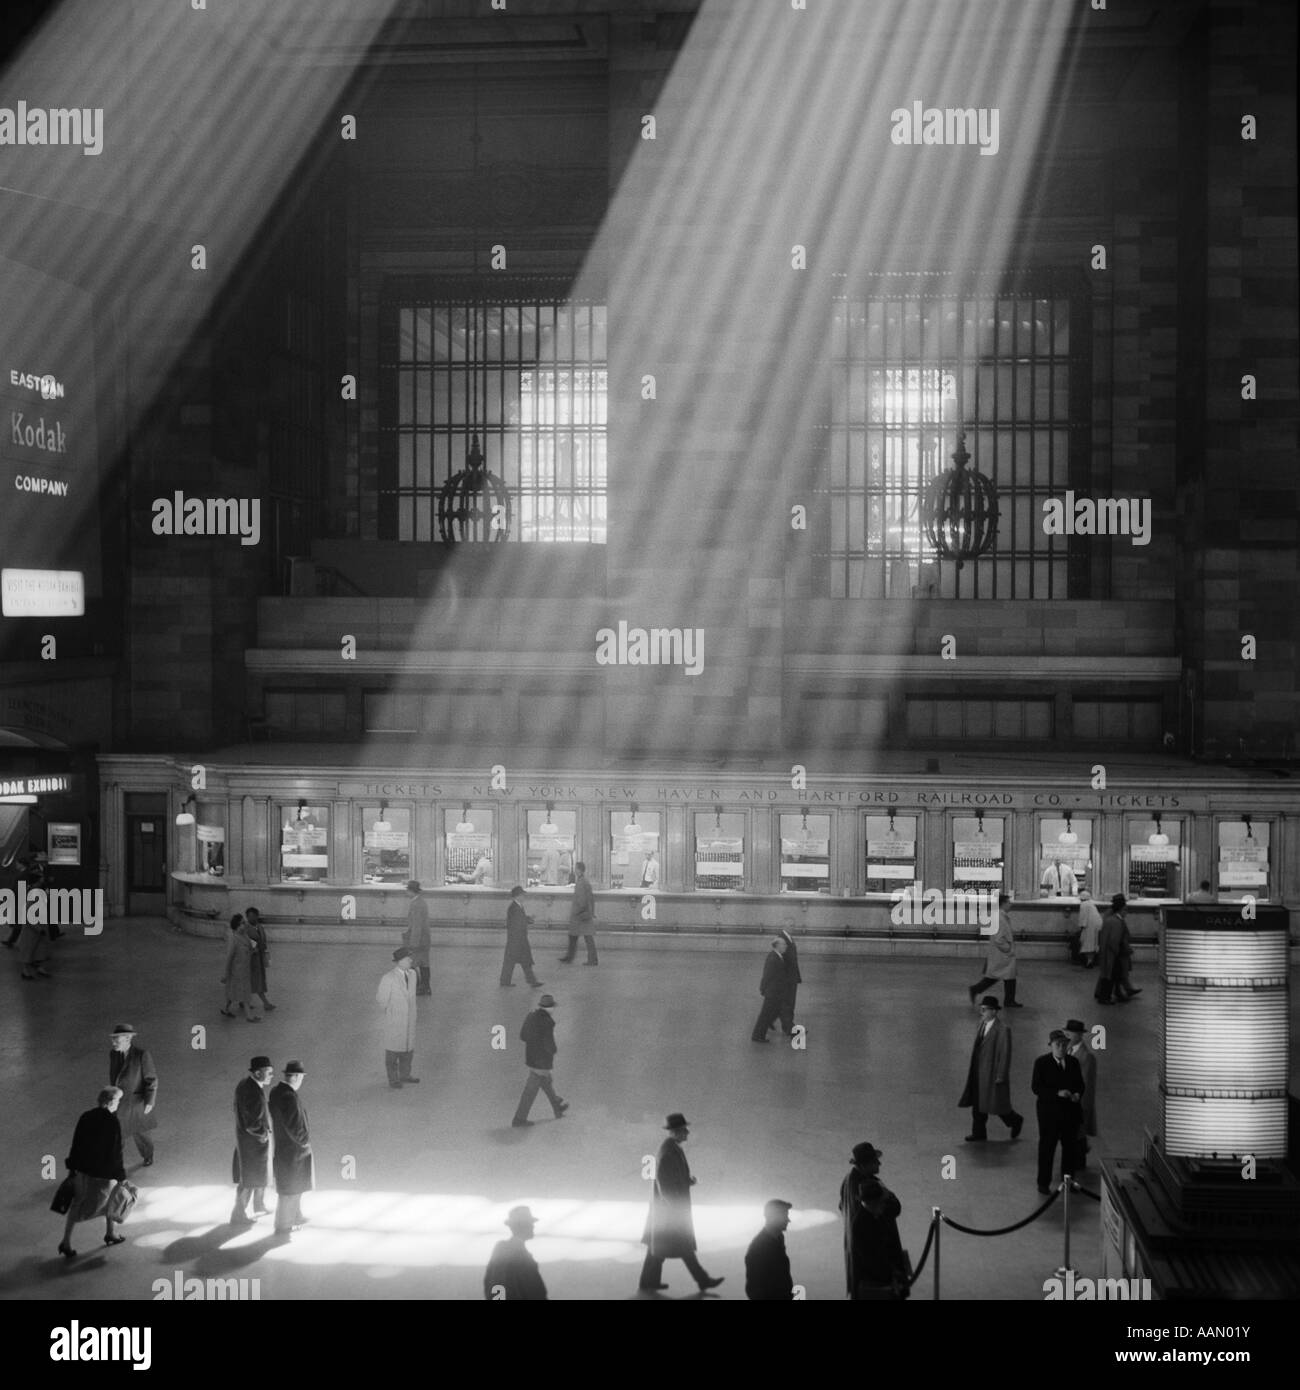 1960 Foule MARCHANT À TRAVERS LES RAYONS DANS LE MAGNIFIQUE ATRIUM CAVERNEUX POÉTIQUE DRAMATIQUE DE LA GARE GRAND CENTRAL NEW YORK CITY Banque D'Images